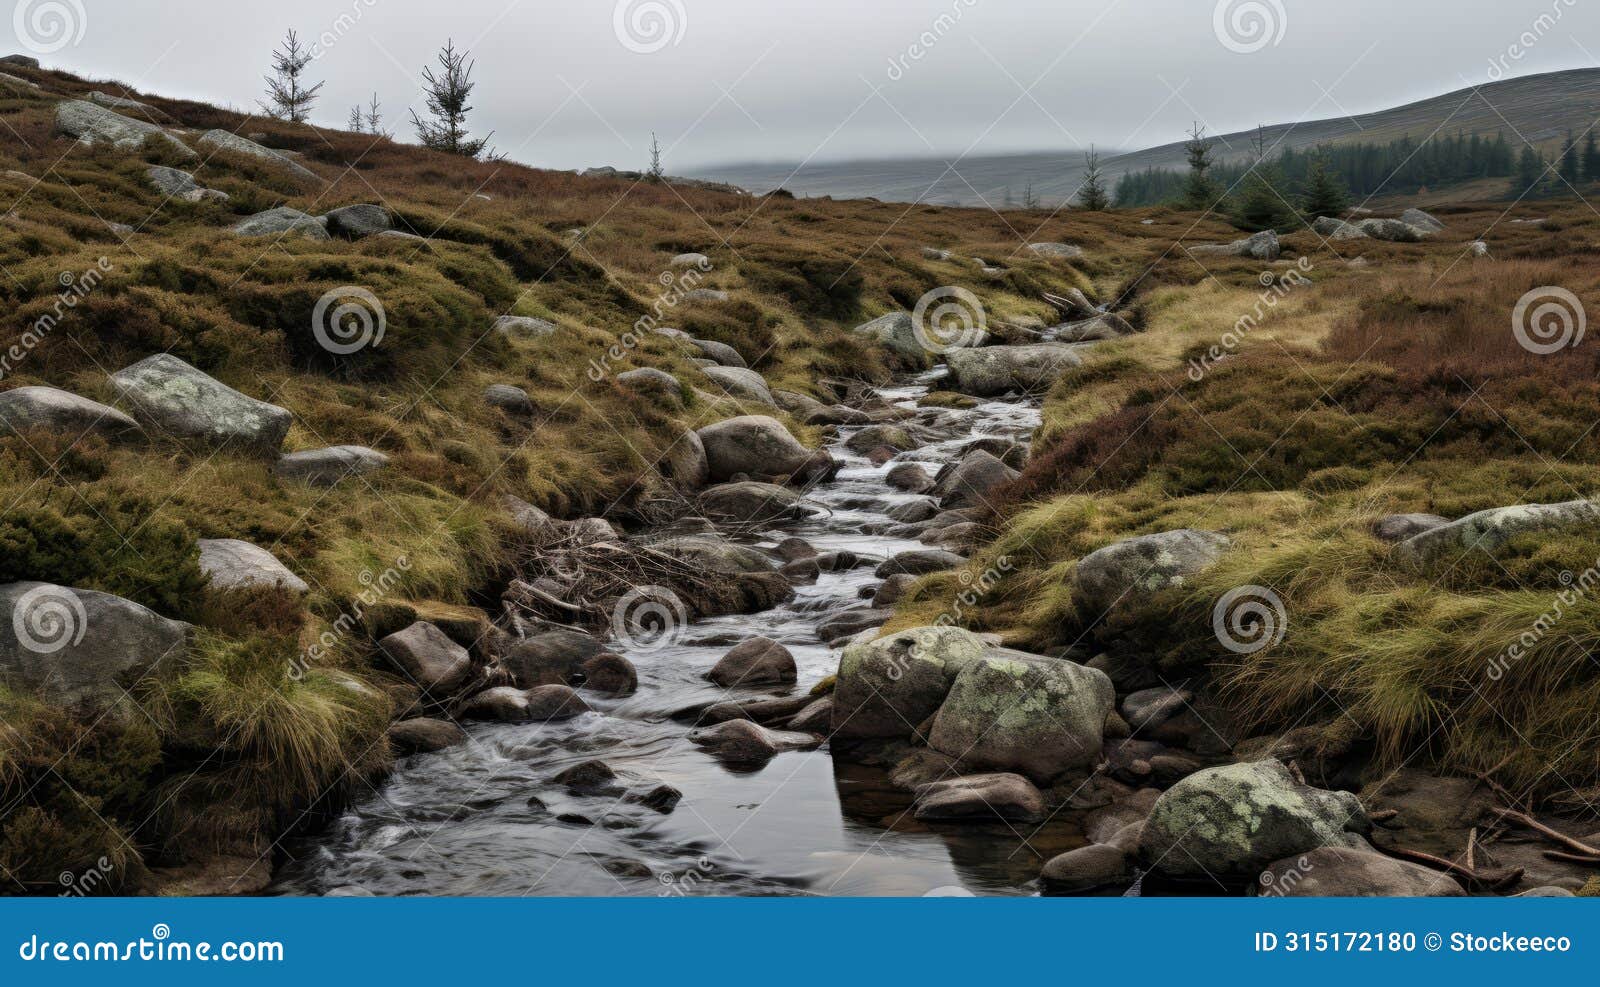 misty stream flowing through hills with rocks - steinheil quinon 55mm f19